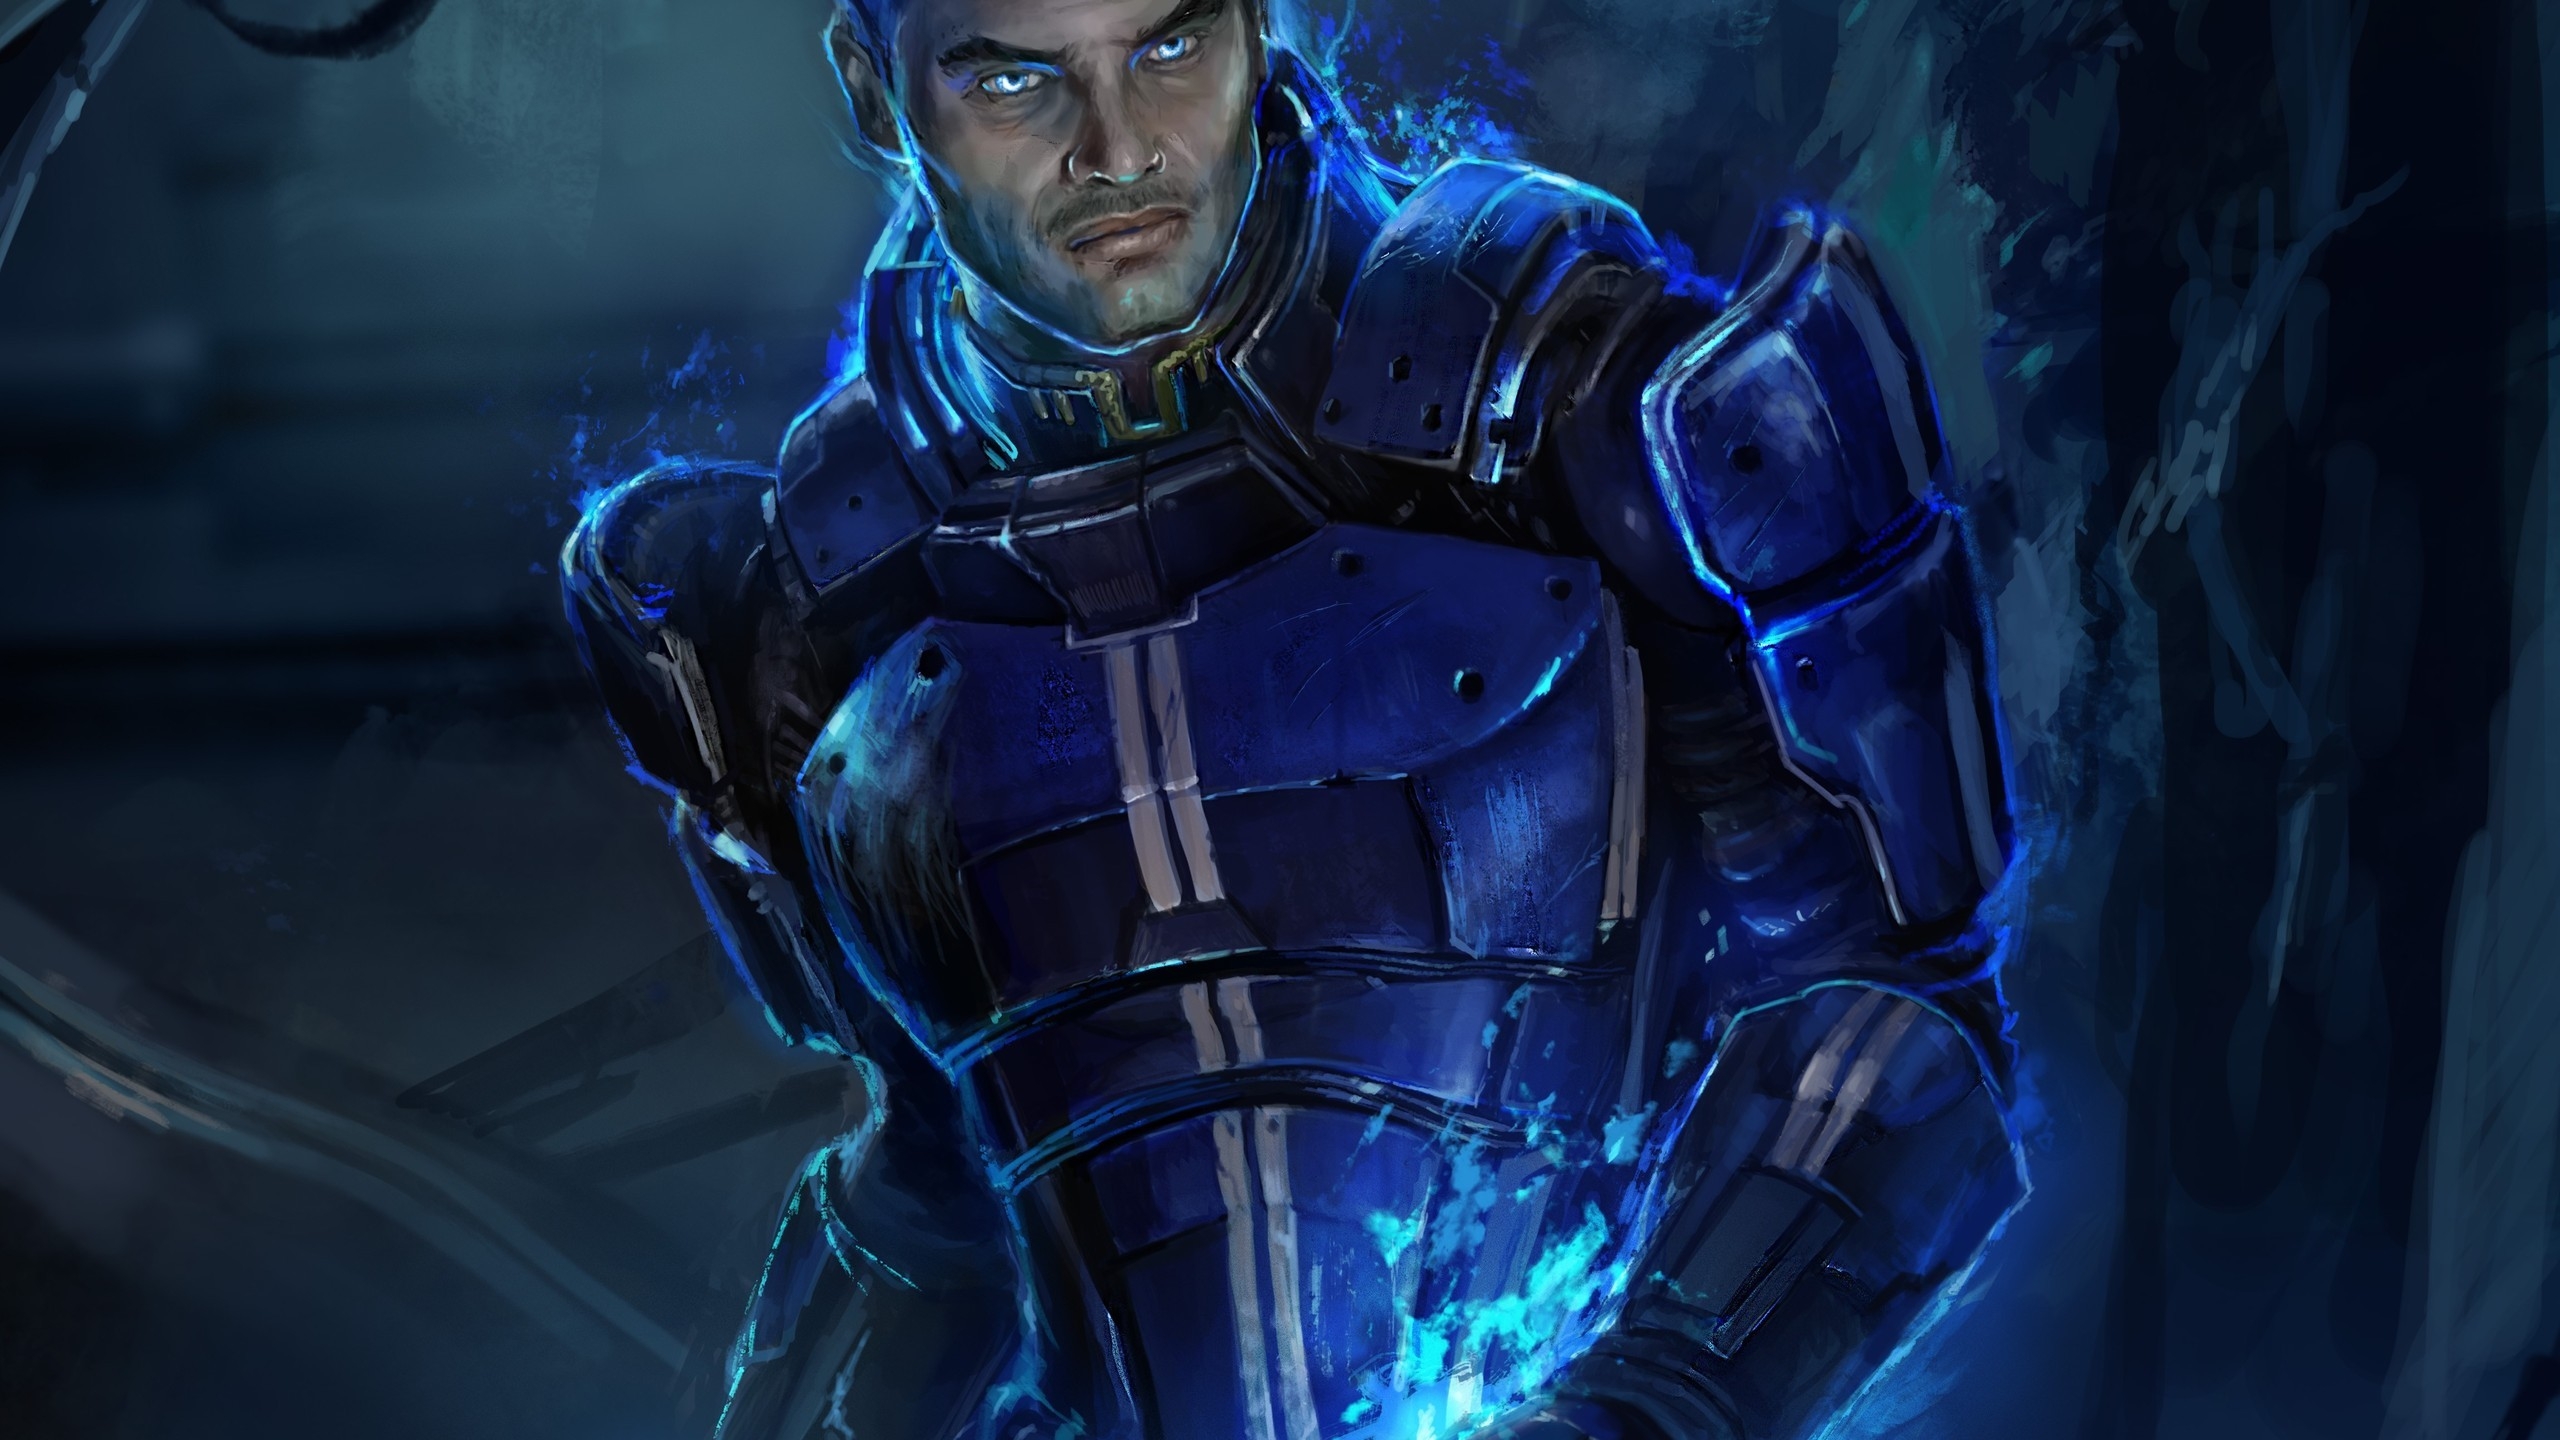 Kaidan Alenko Mass Effect 3 for 2560x1440 HDTV resolution